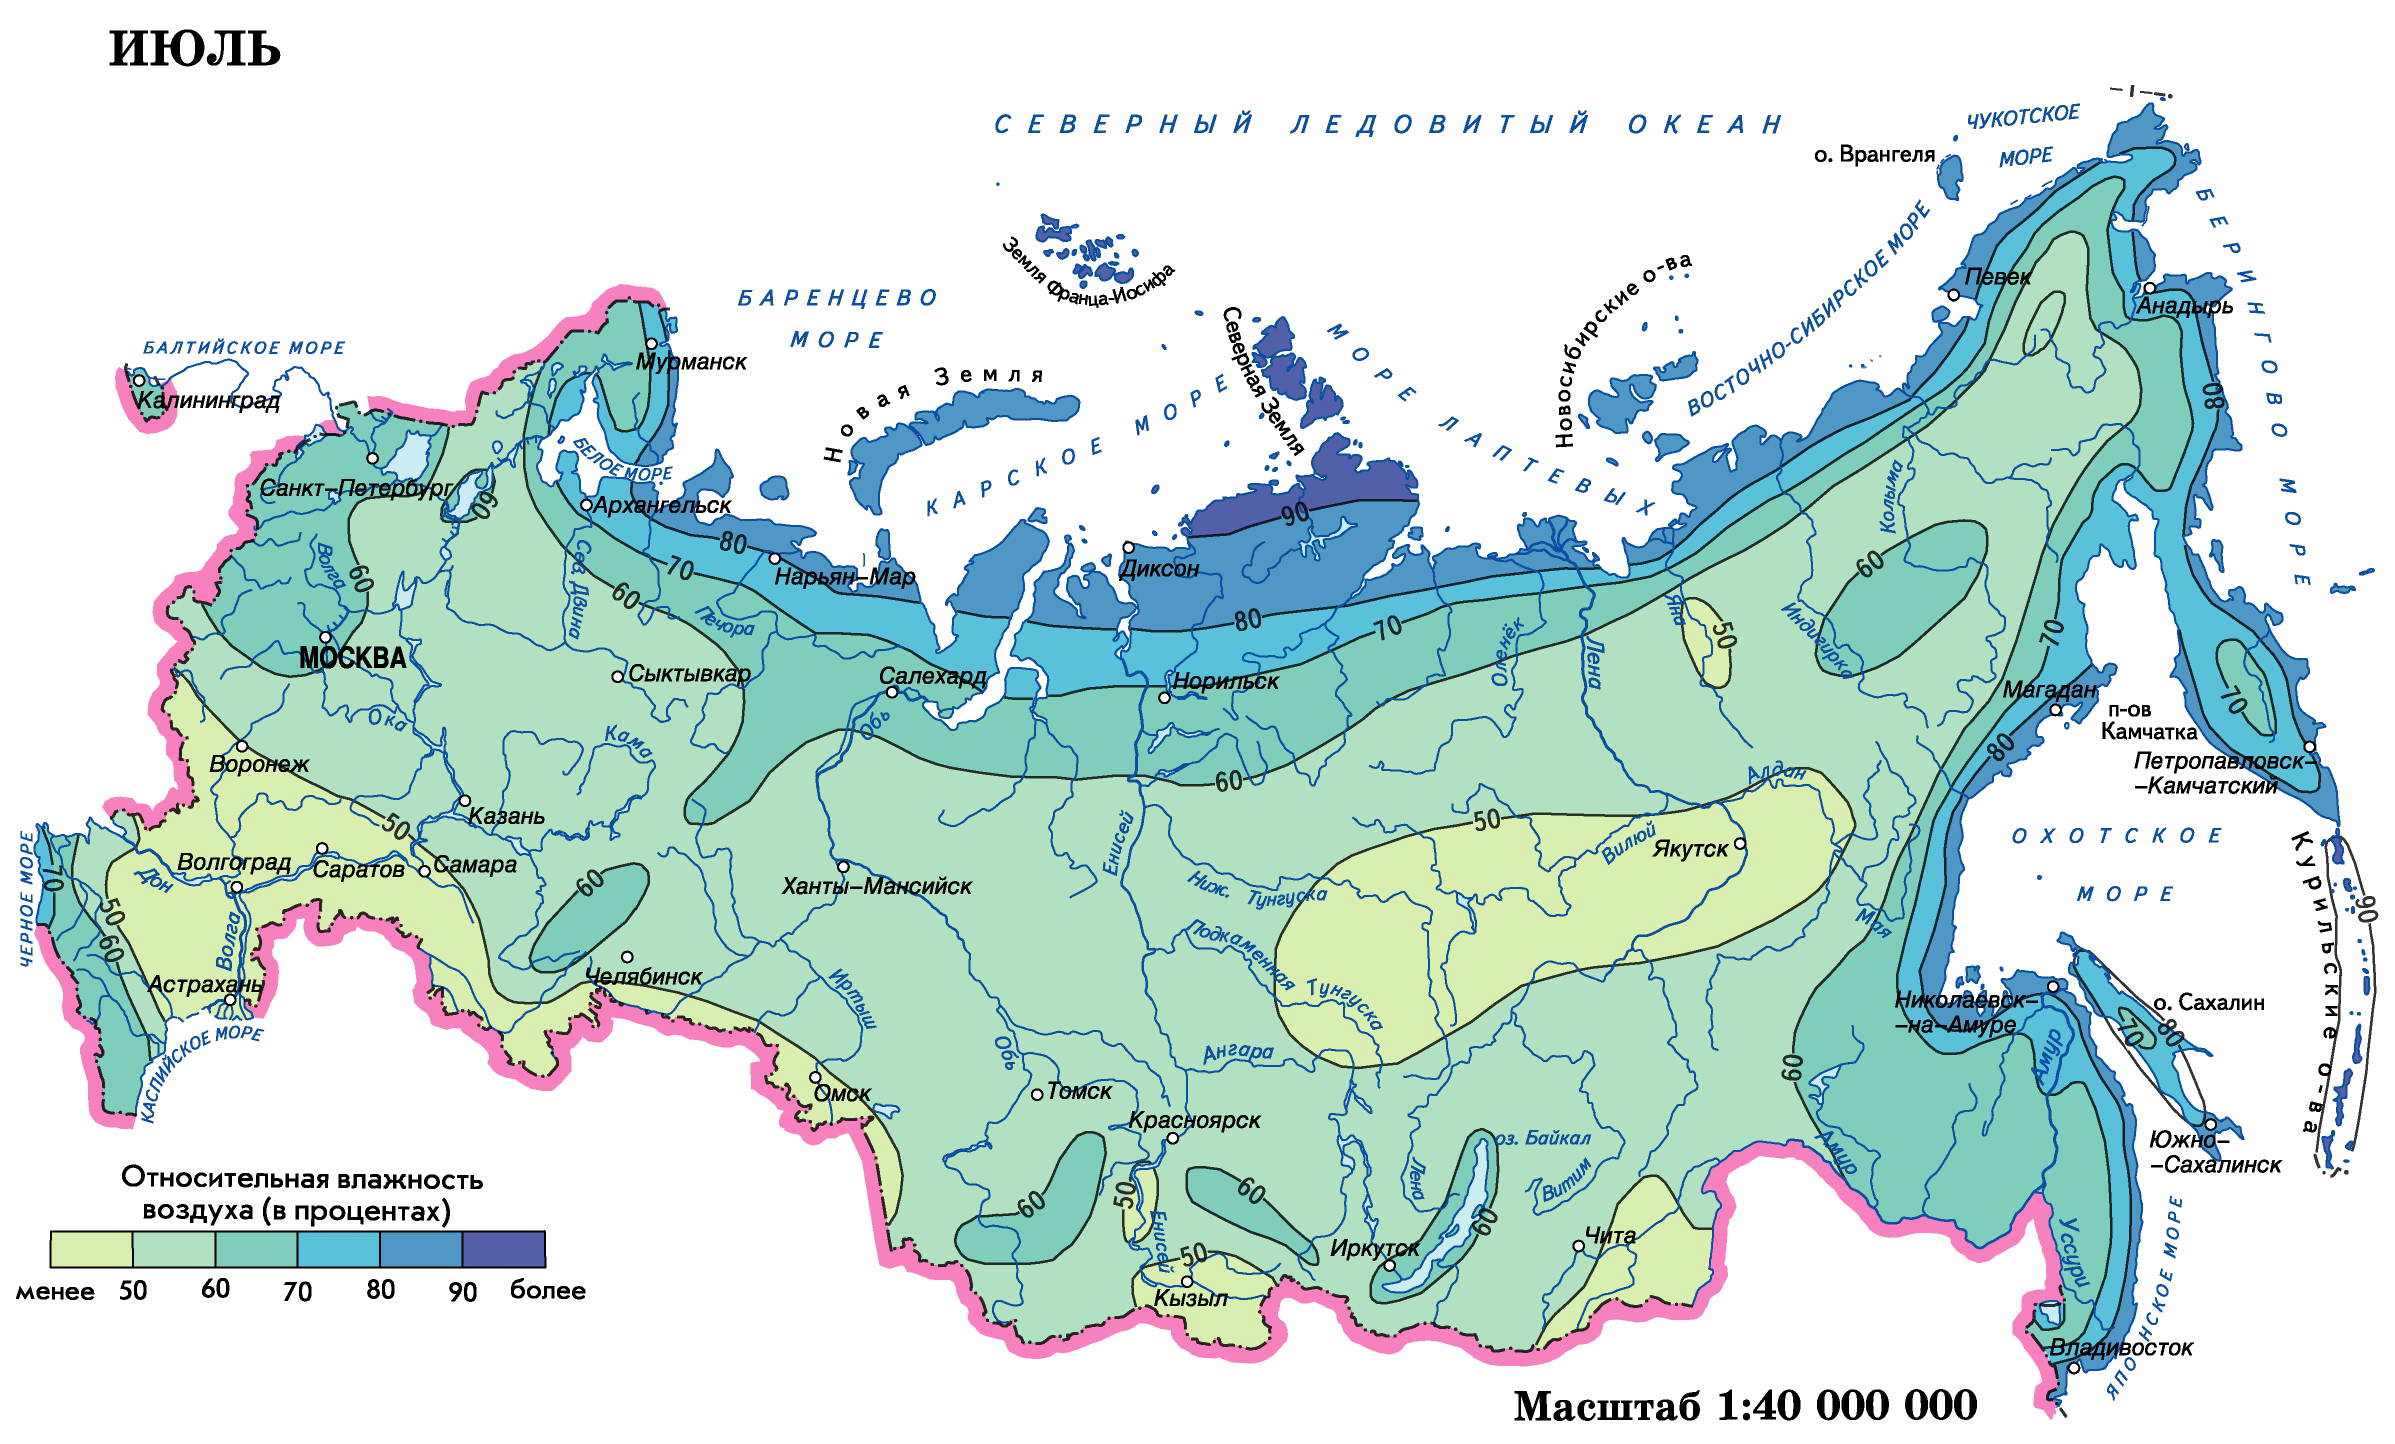 Температура воздуха в озерах. Карта влажности воздуха России. Карта влажности климата России. Карта влажности воздуха России среднегодовая.